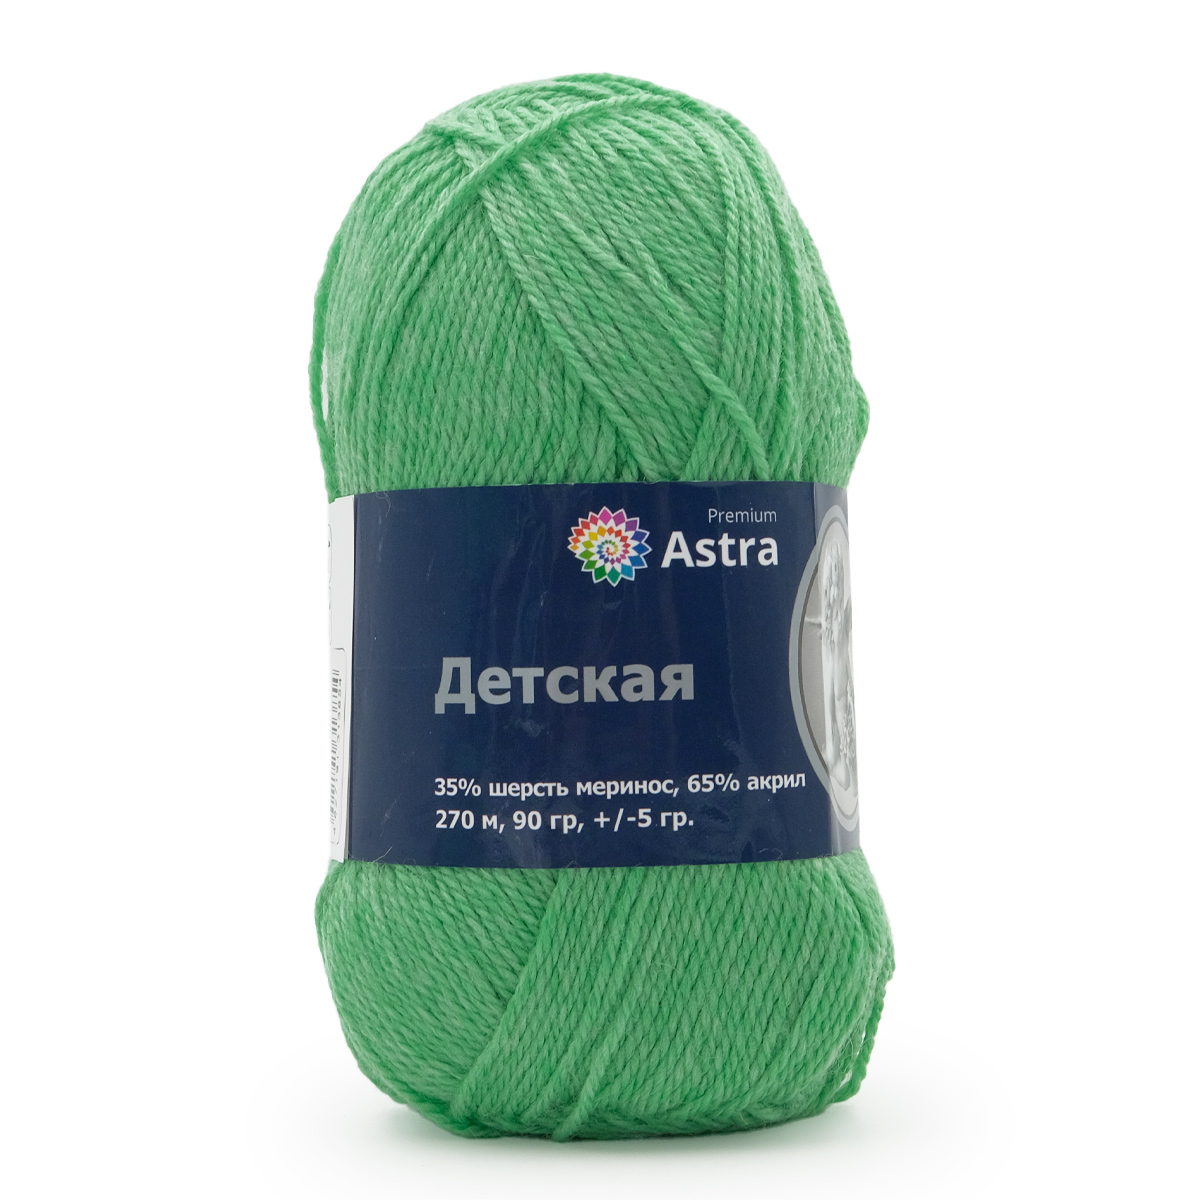 Пряжа для вязания Astra Premium детская из акрила и шерсти для детских вещей 90 гр 270 м 025 мята 3 мотка - фото 1